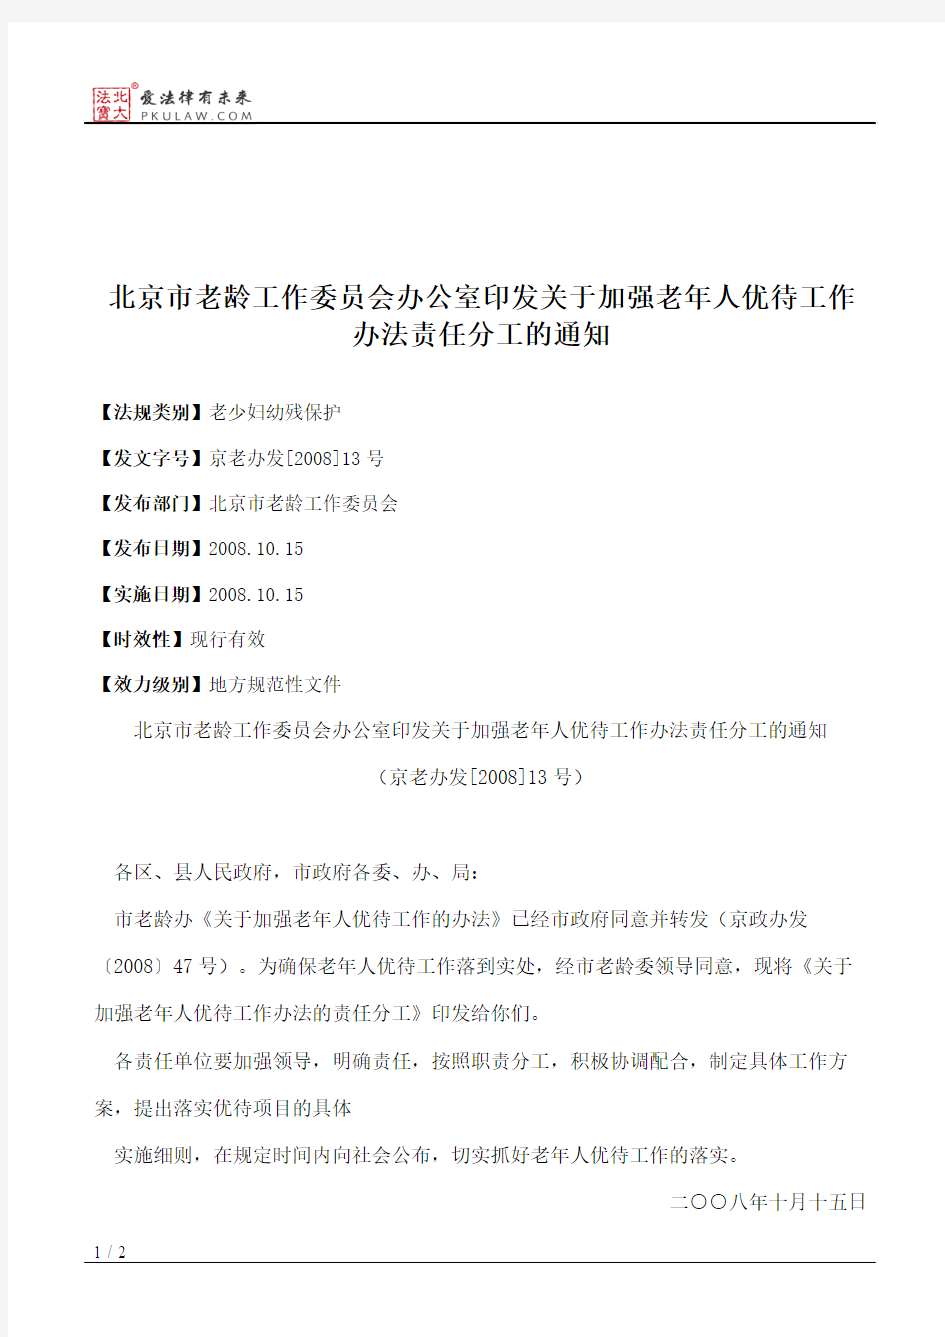 北京市老龄工作委员会办公室印发关于加强老年人优待工作办法责任